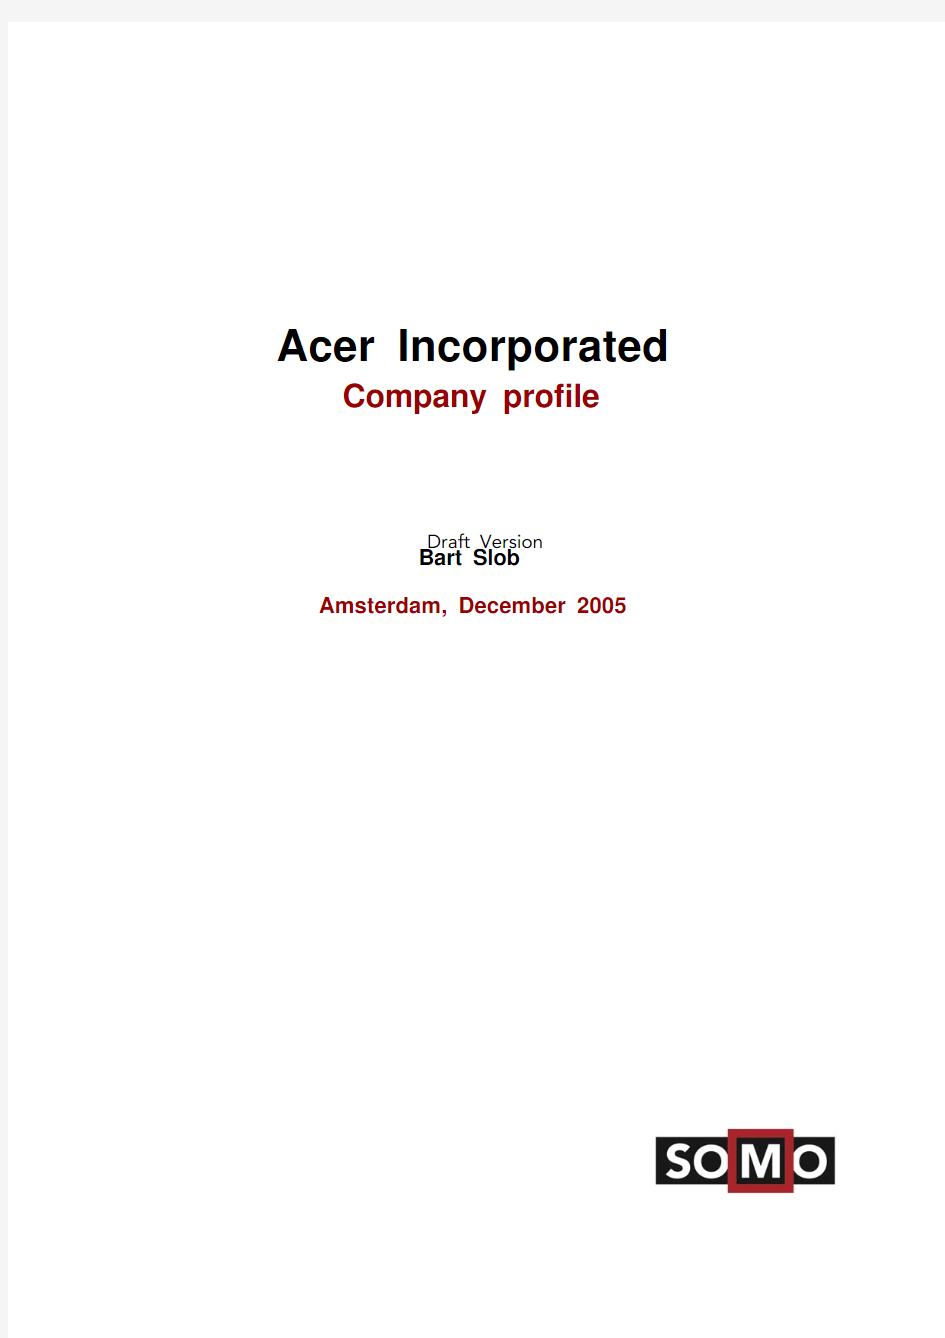 Acer case study 宏碁案例分析